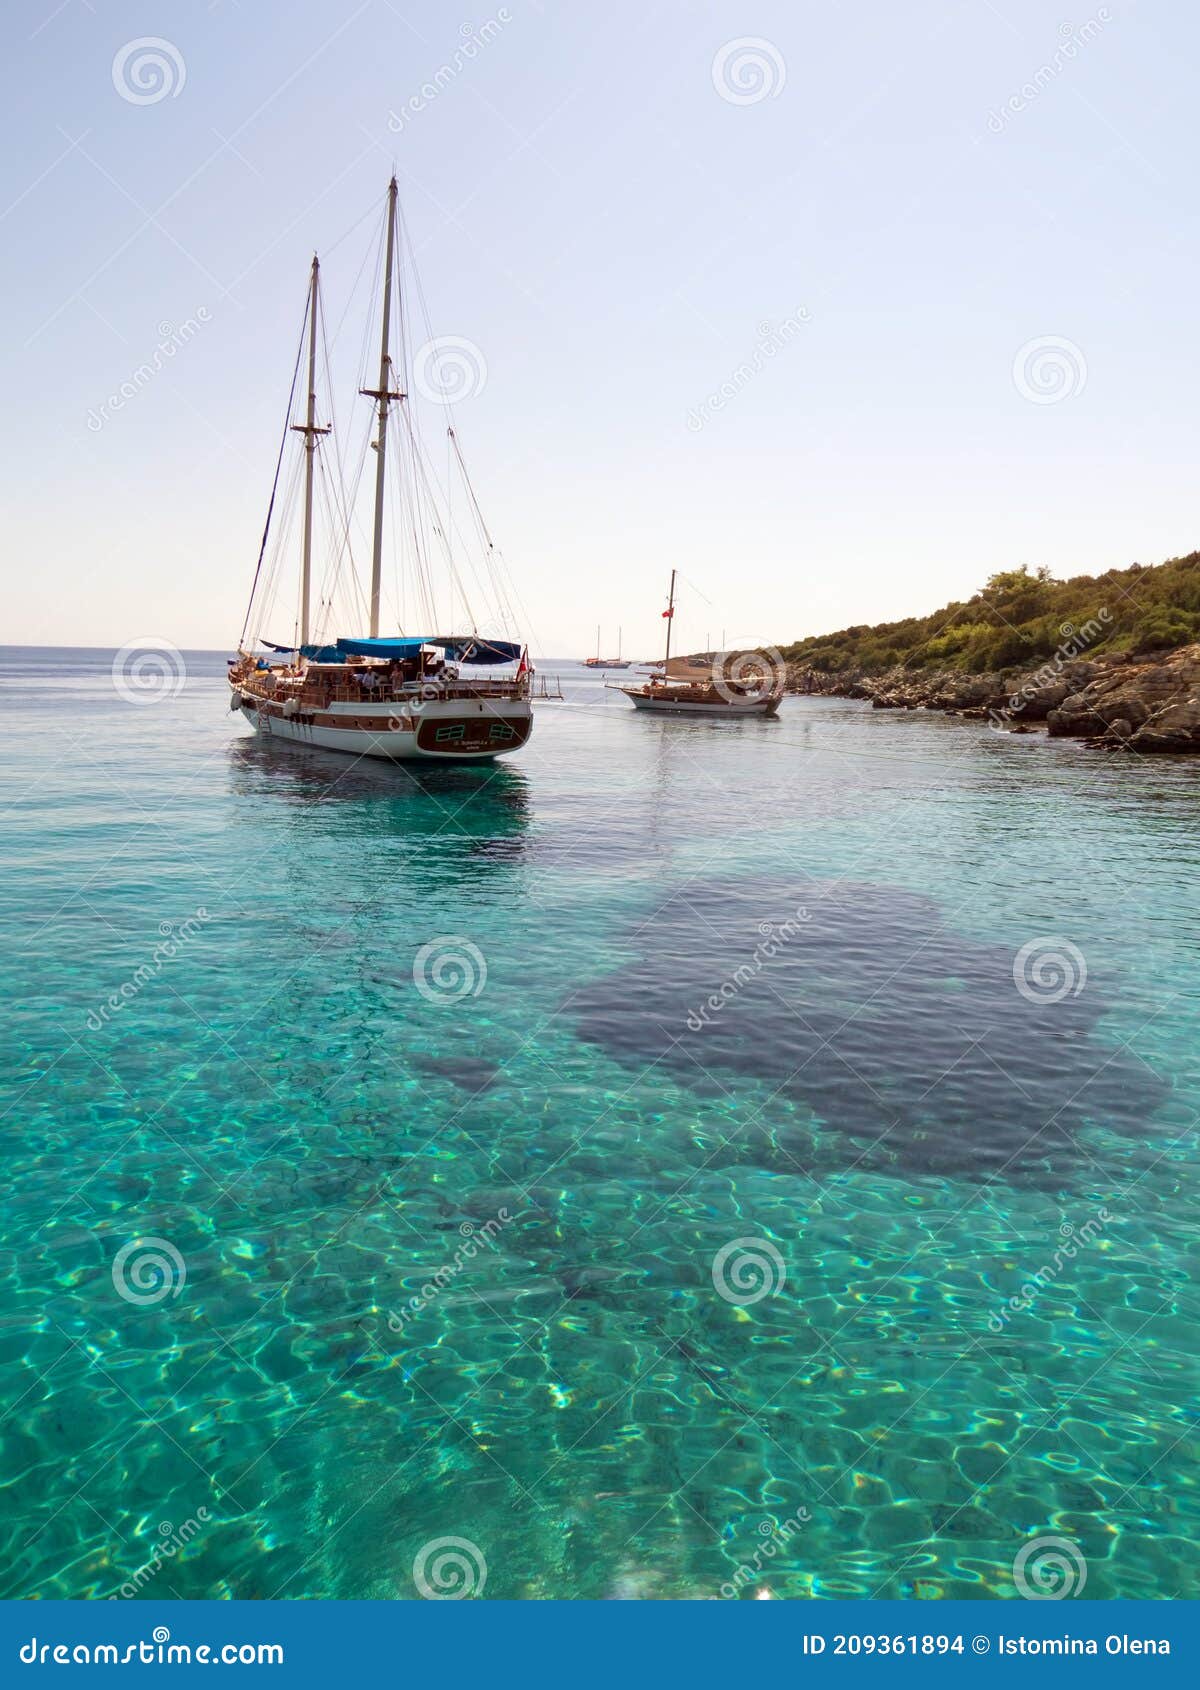 Plezierjachten Bij Het Eiland Orak In De Egeïsche Zee Redactionele Stock  Afbeelding - Image Of Landschap, Groen: 209361894